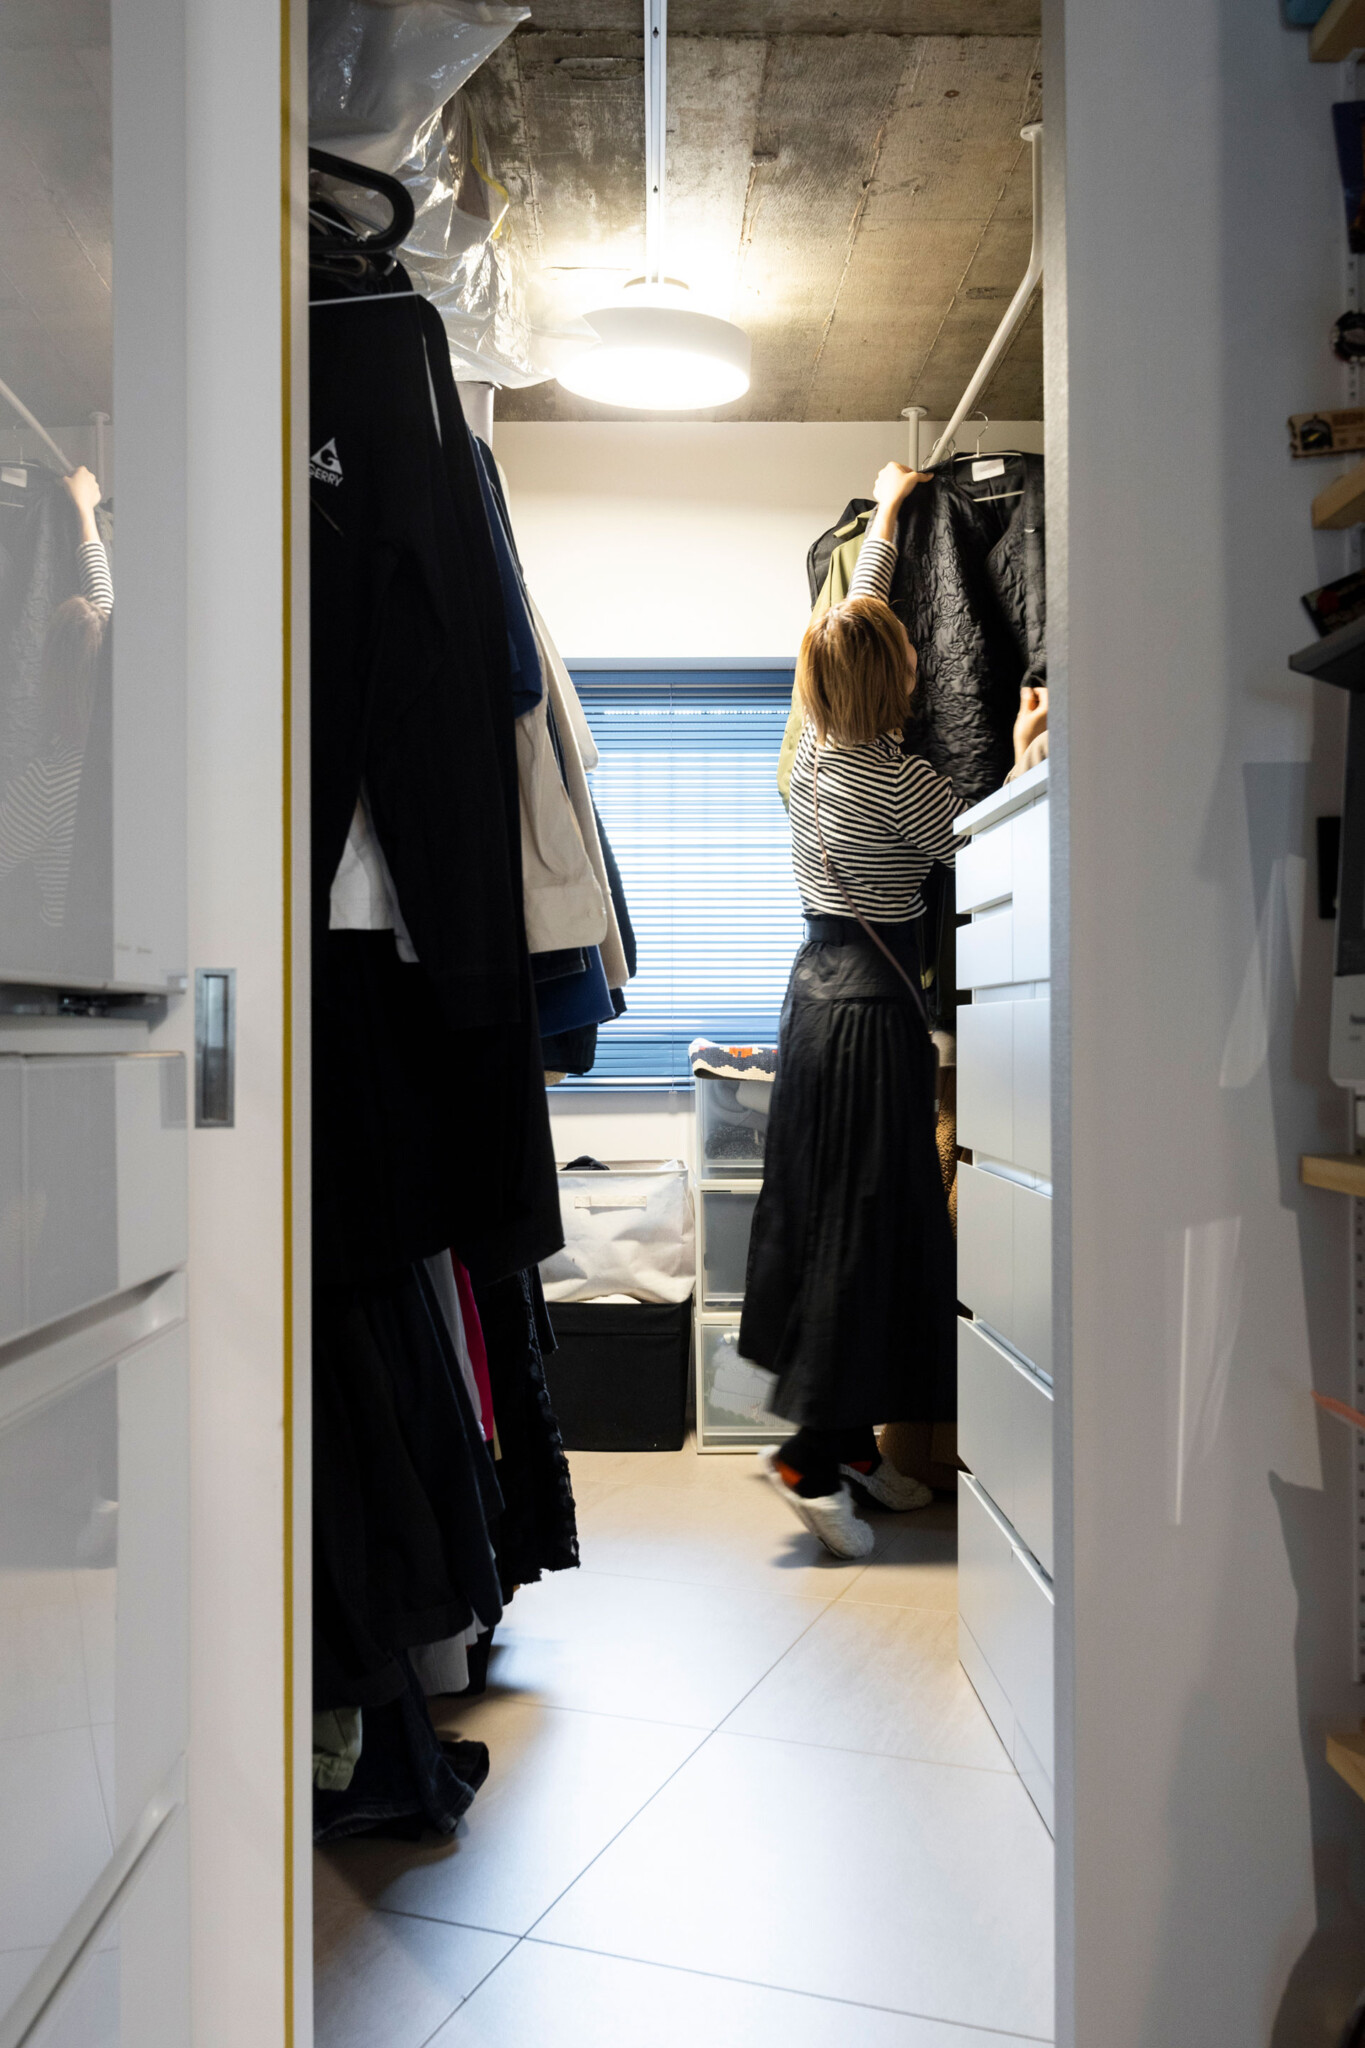 洋服はハンガーにかけて収納し、畳まないことで家事の時短を図る。ウォークインクローゼットは、キッチンから玄関へとグルリと回遊できる。